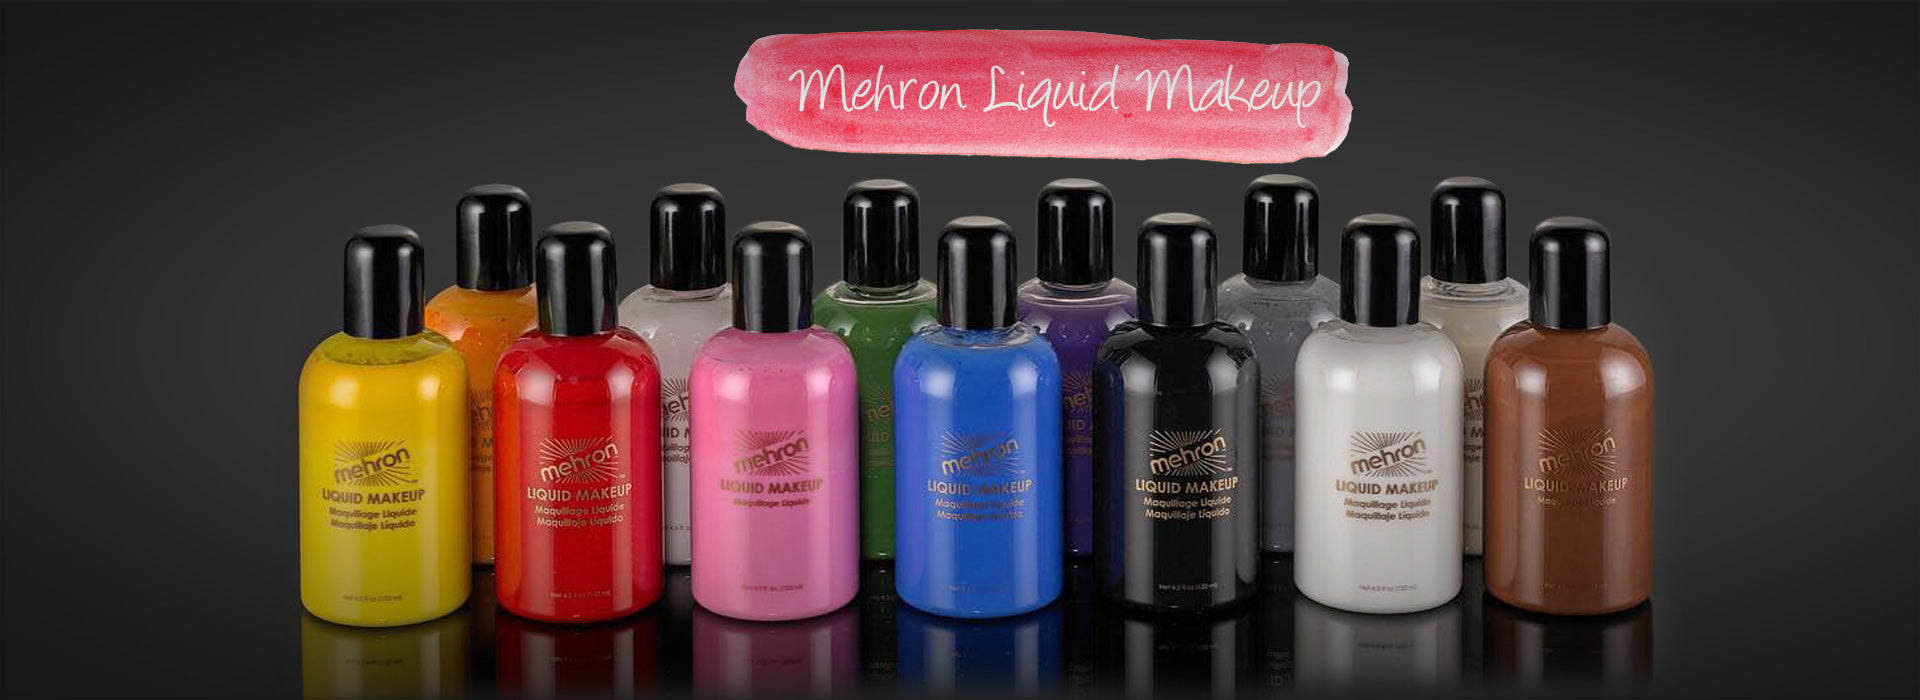 Mehron Liquid Makeup